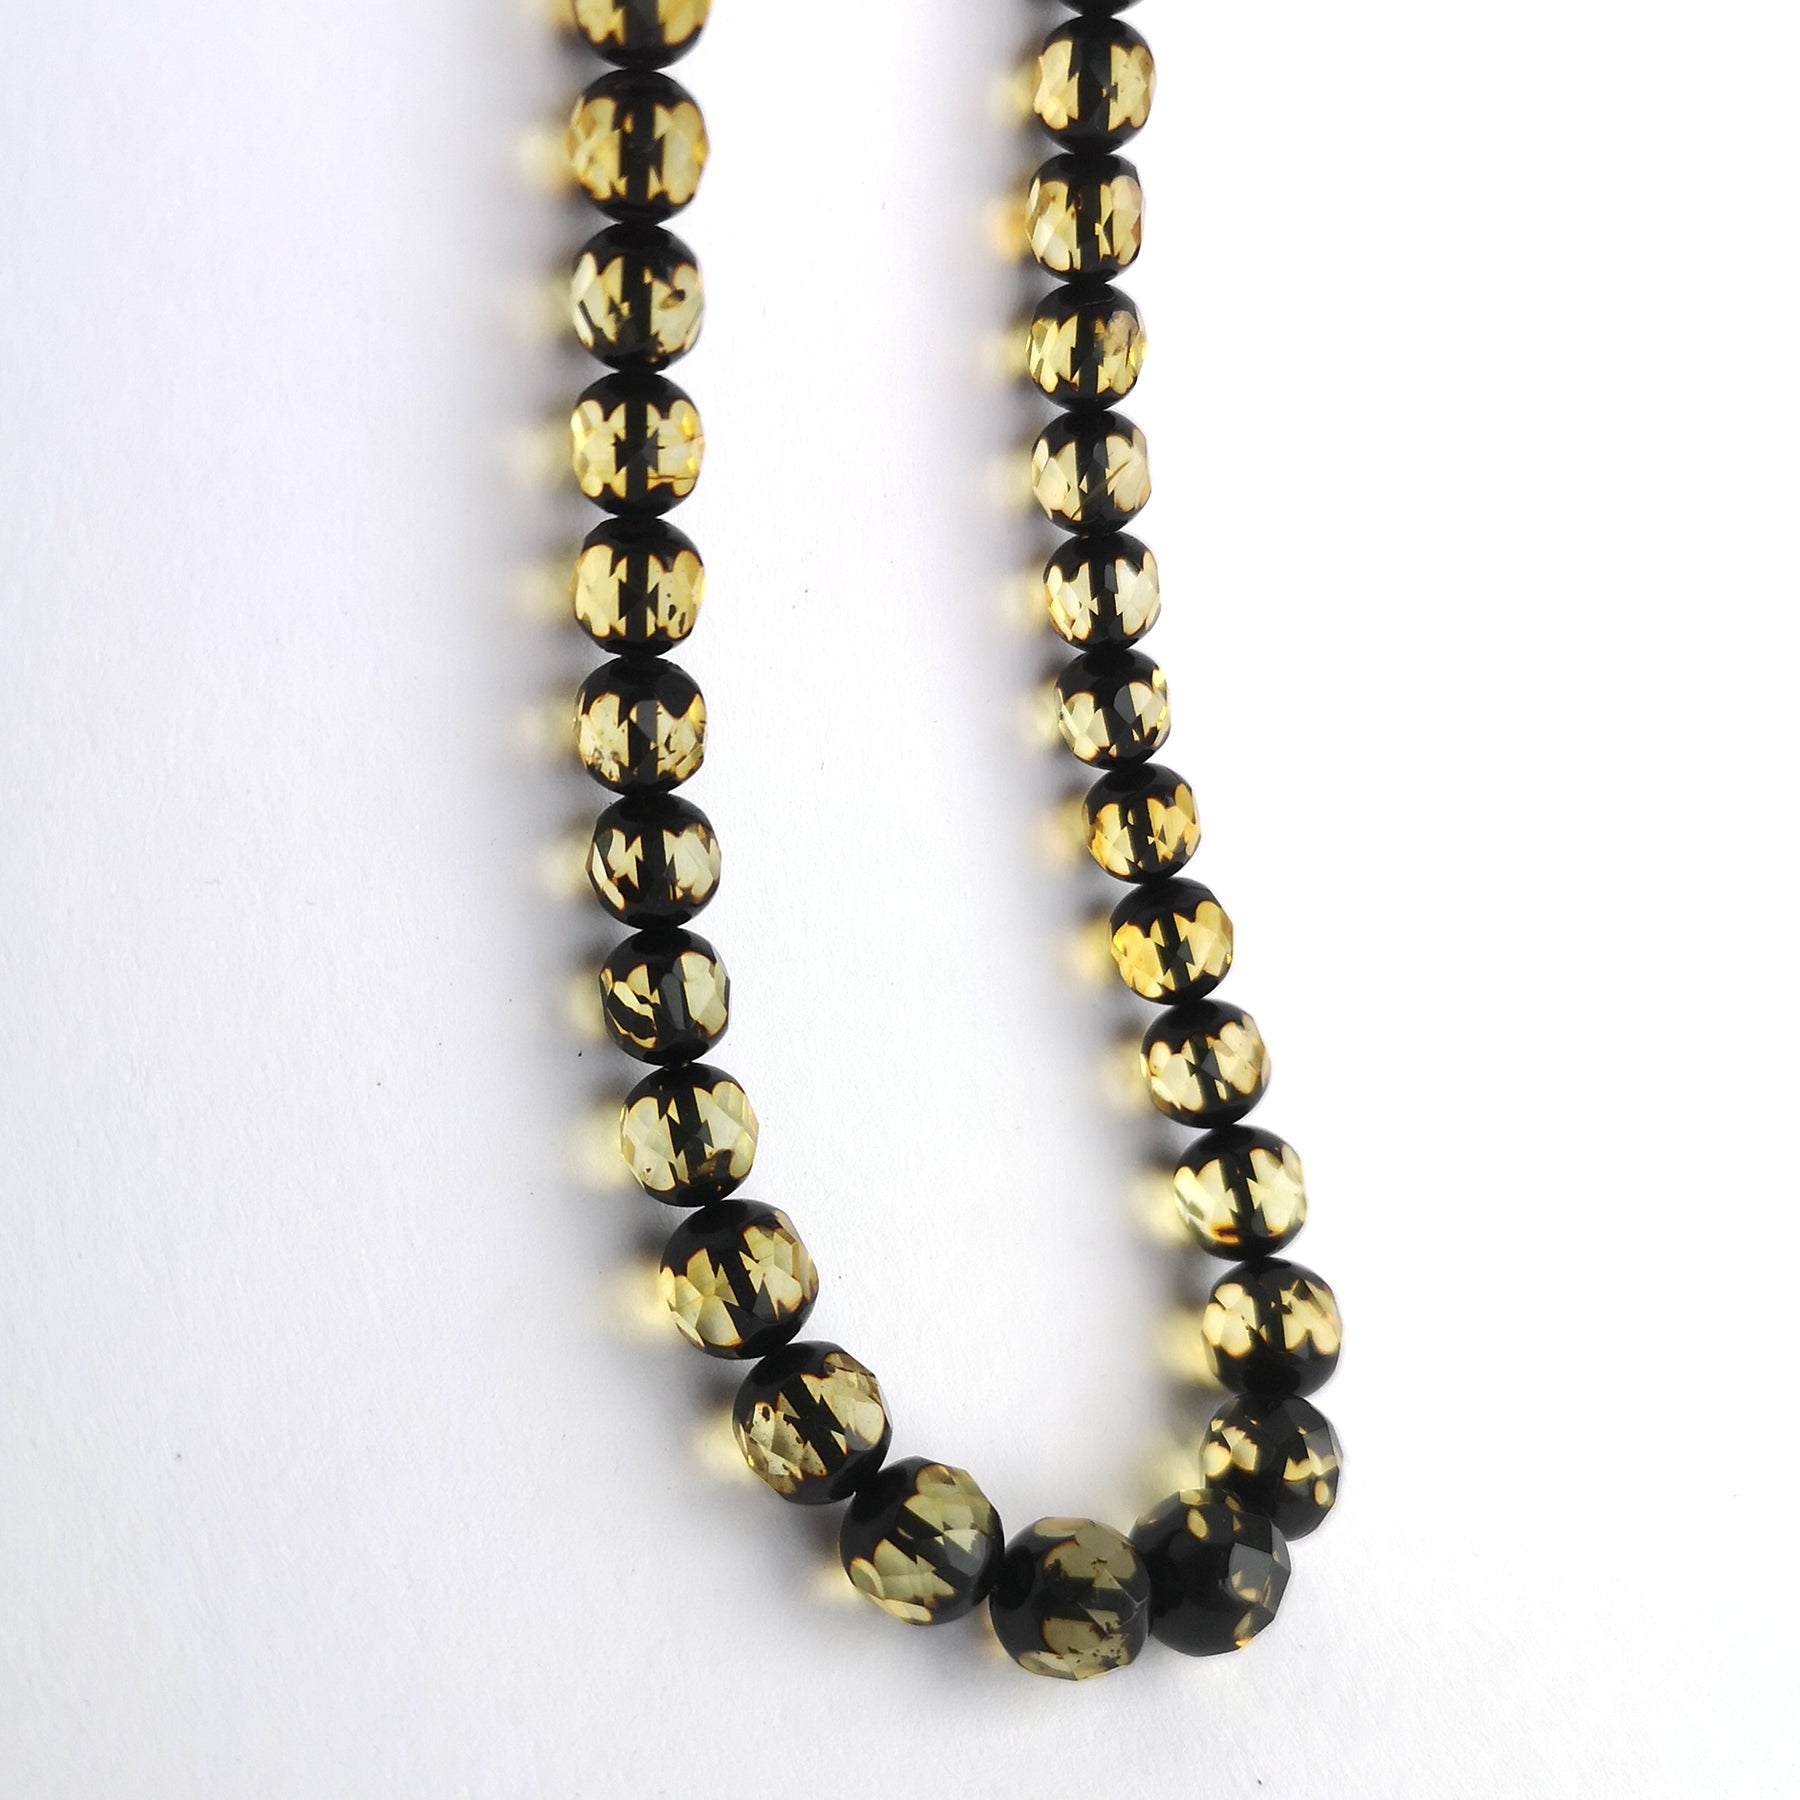 Amber necklace "Shiny shiny"